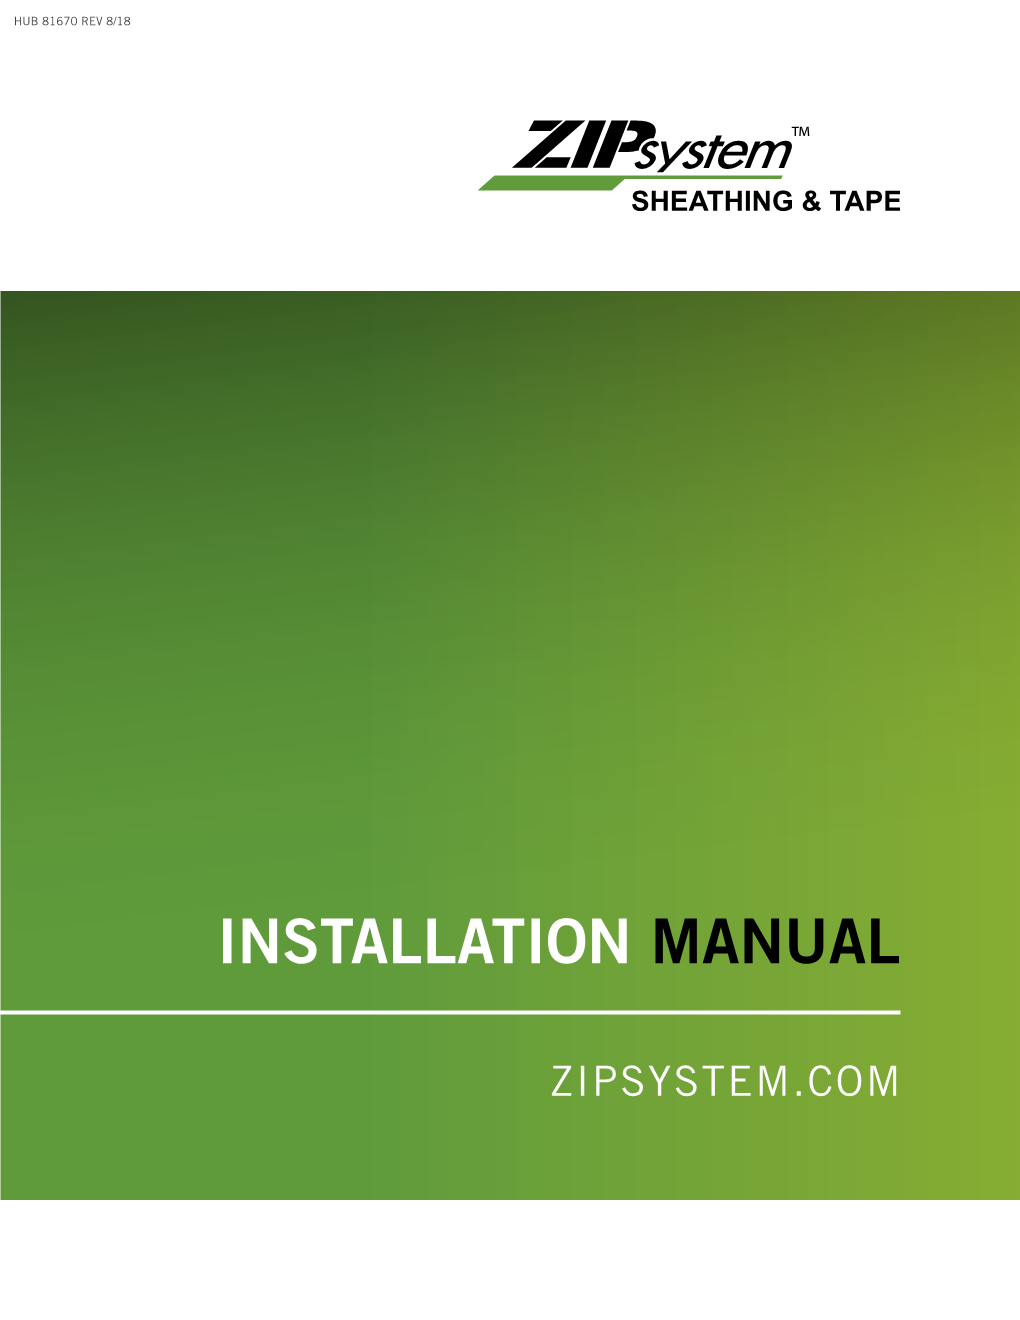 ZIP System Installation Manual